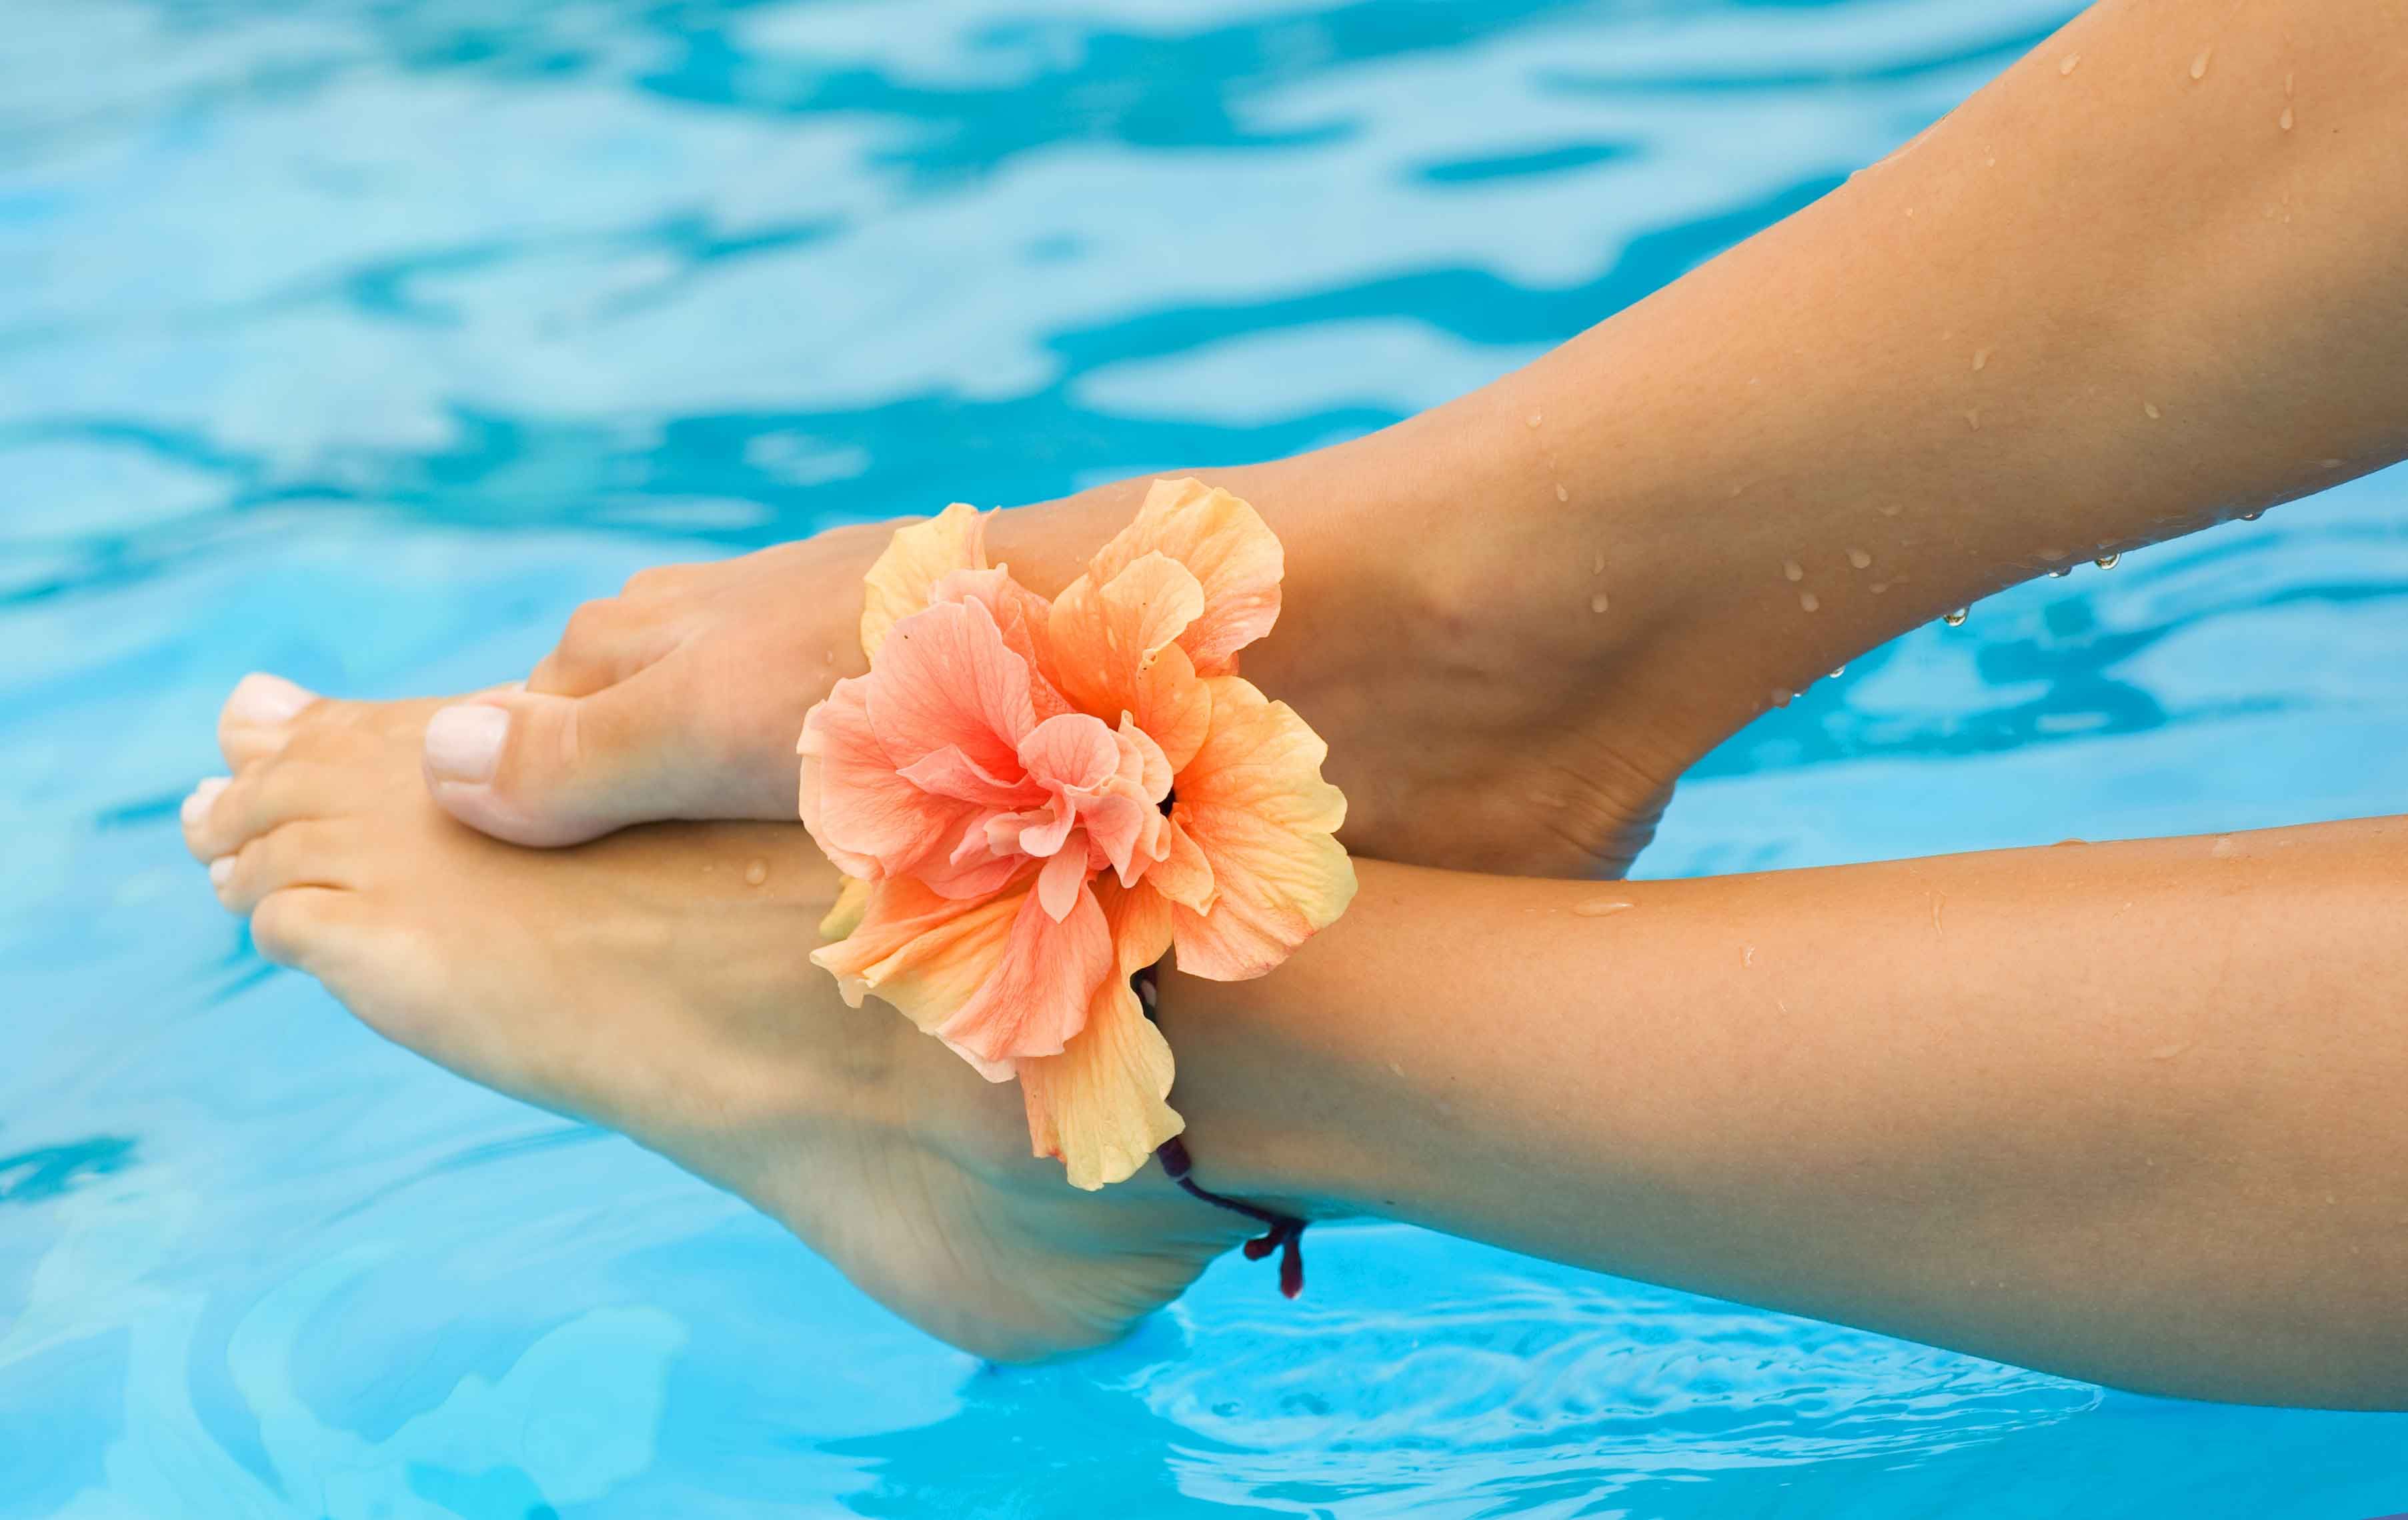 pies mojado en una piscina con una flor encima